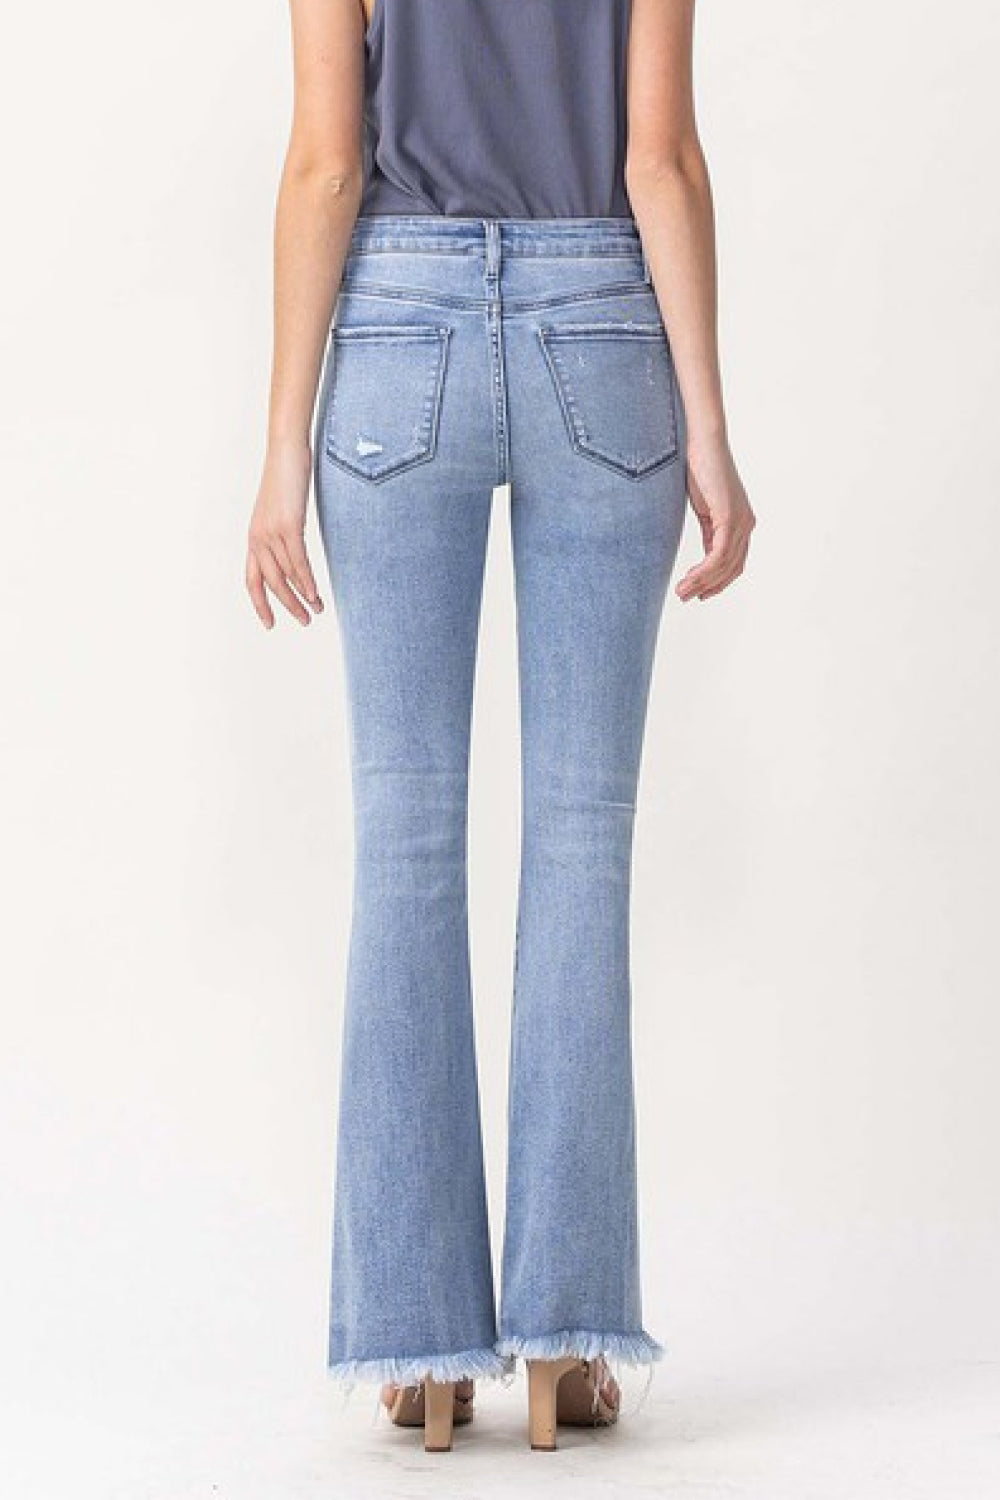 Lovervet Full Size Evie High Rise Fray Flare Jeans